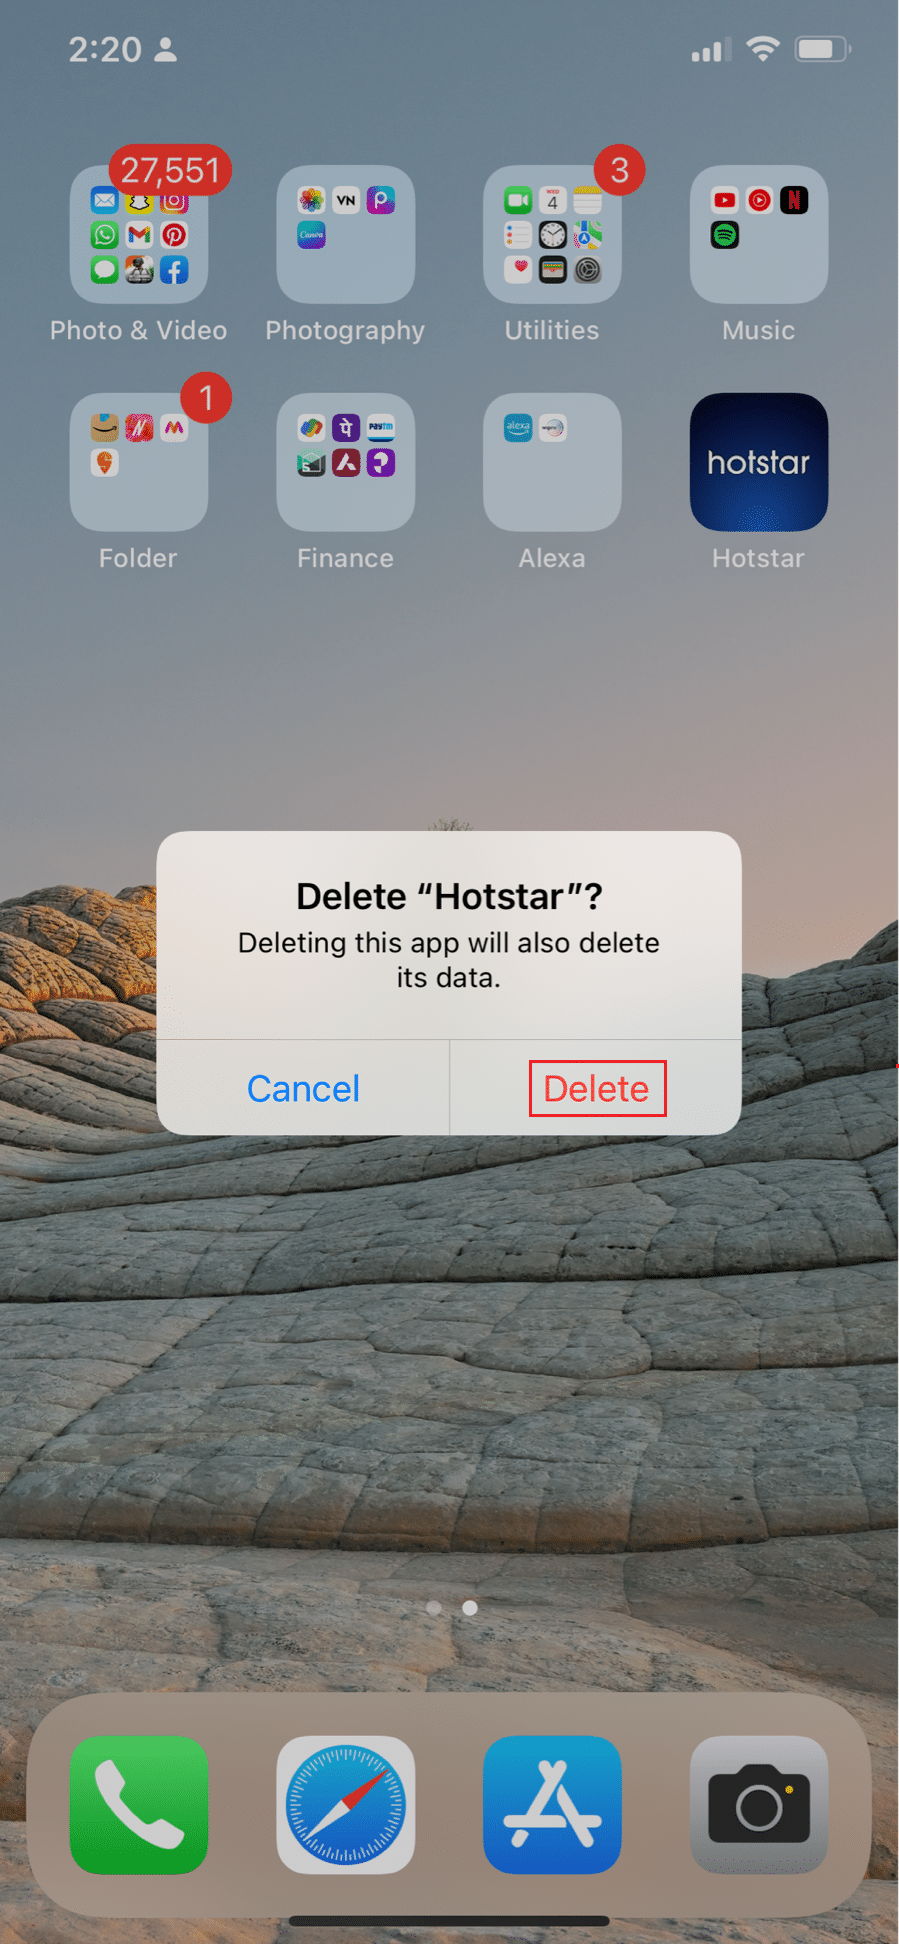 seleccione la opción de eliminar para desinstalar la aplicación hotstar en iPhone